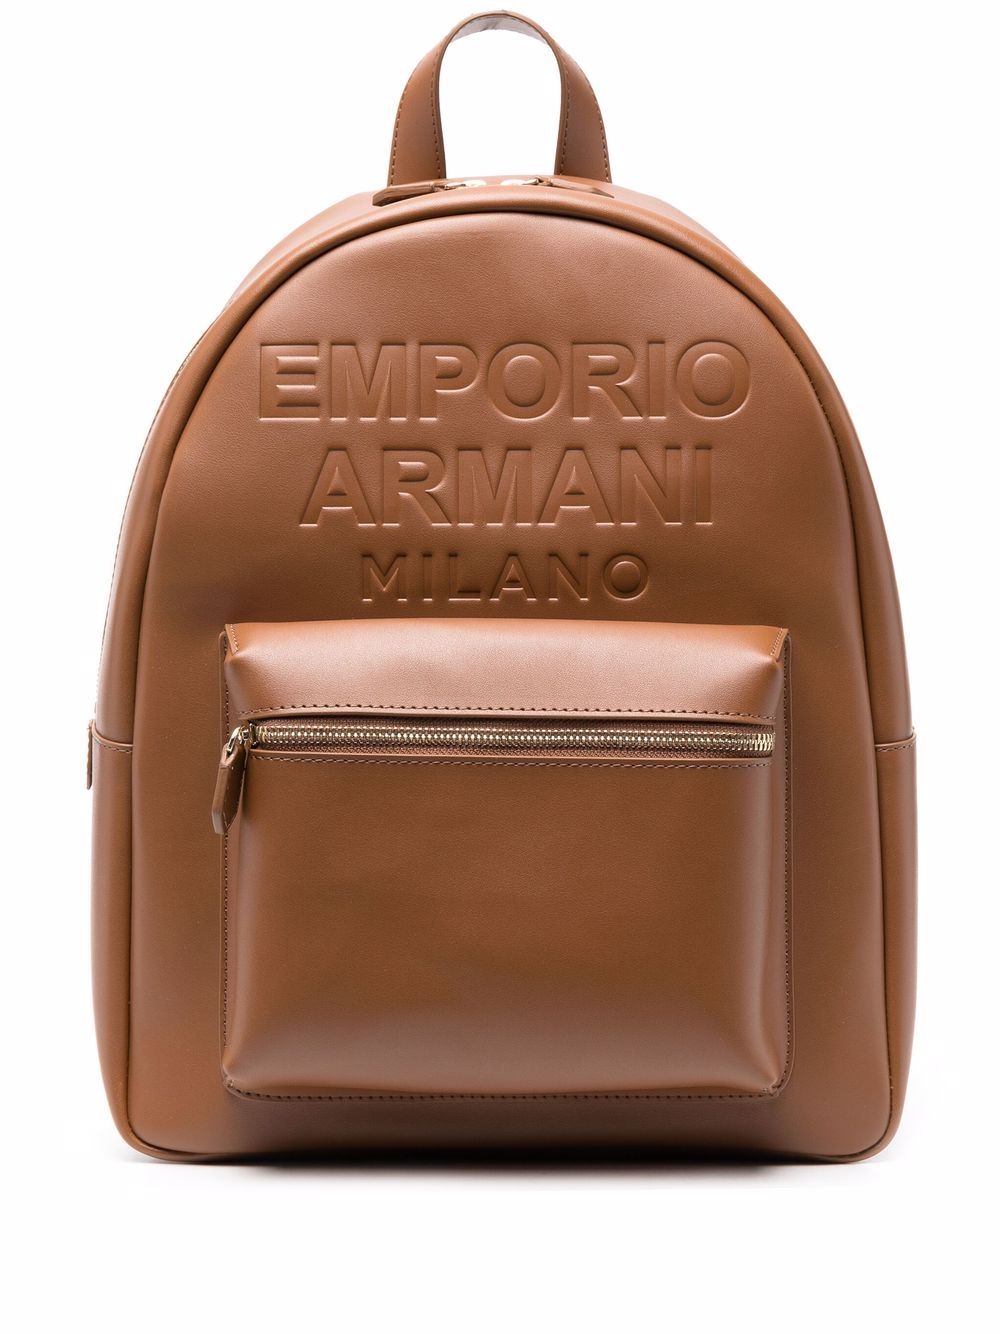 фото Emporio armani рюкзак с тисненым логотипом